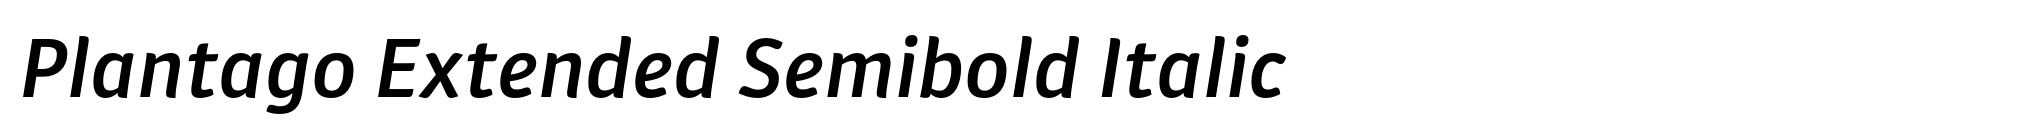 Plantago Extended Semibold Italic image